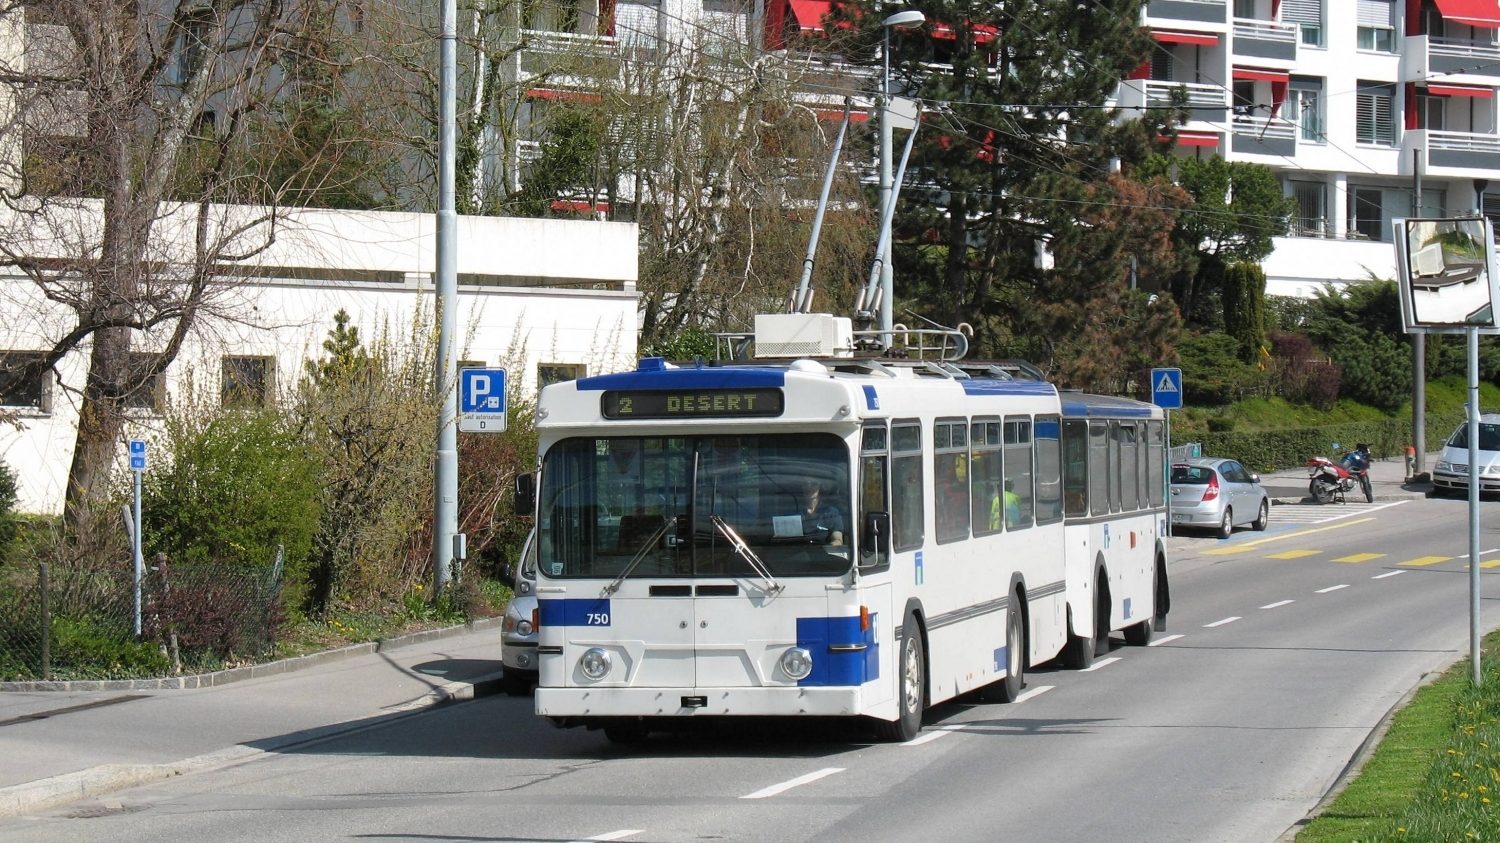 Pohled na trolejbusový vlak v ulicích Lausanne je již minulostí. Poslední dva dojezdily 4. 5. 2021. (zdroj: Flickr,com; foto: A D)